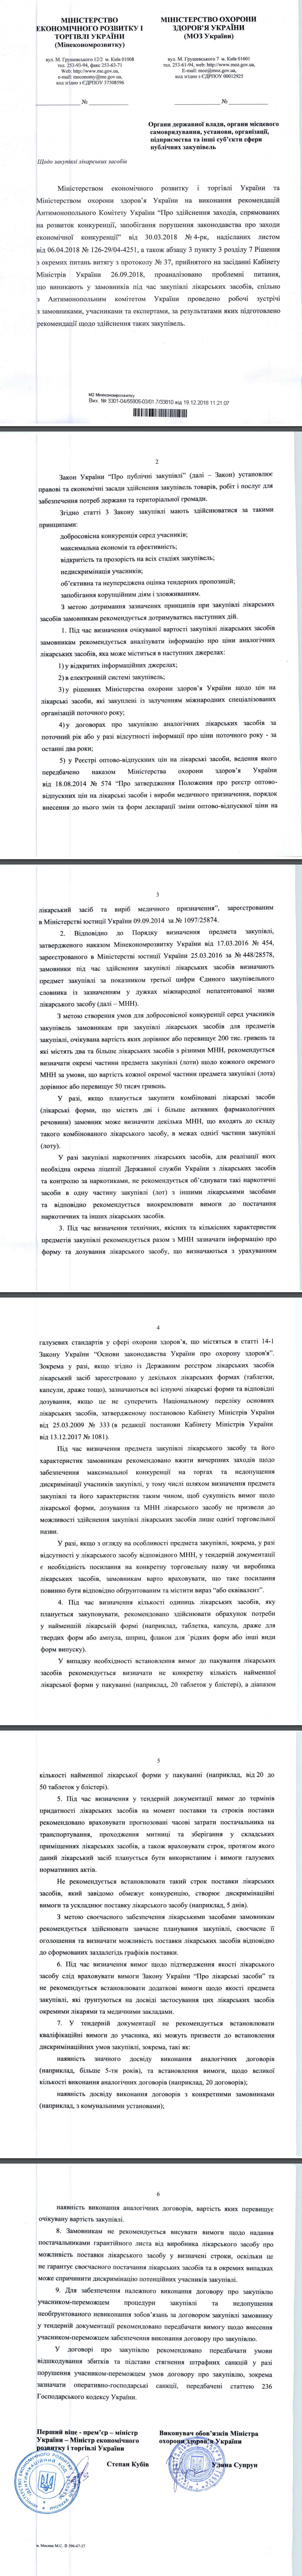 https://www.city.kharkov.ua/assets/files/docs/zakypki/3301-04_55905-03_01.7_33810-vd-19.12.2018.pdf